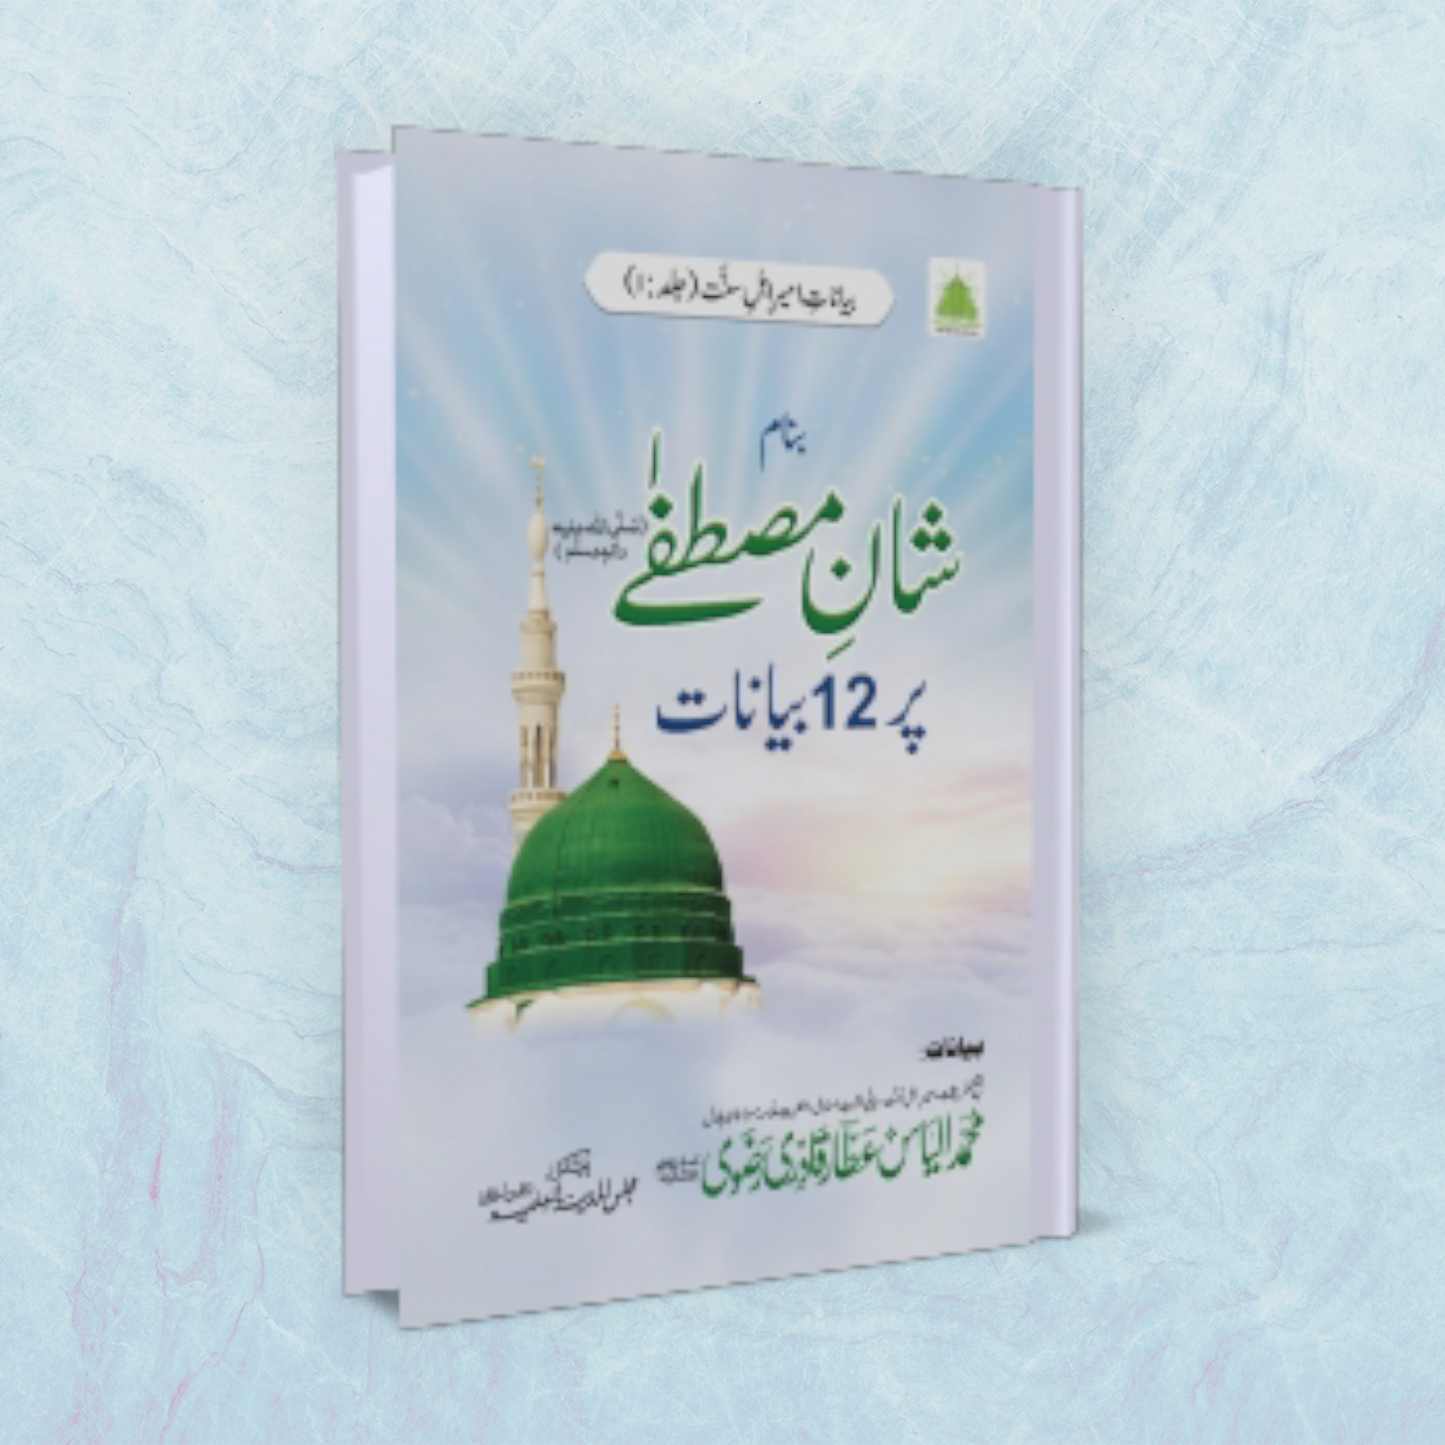 Shaan-E-Mustafa Par 12 Bayanat (Urdu)